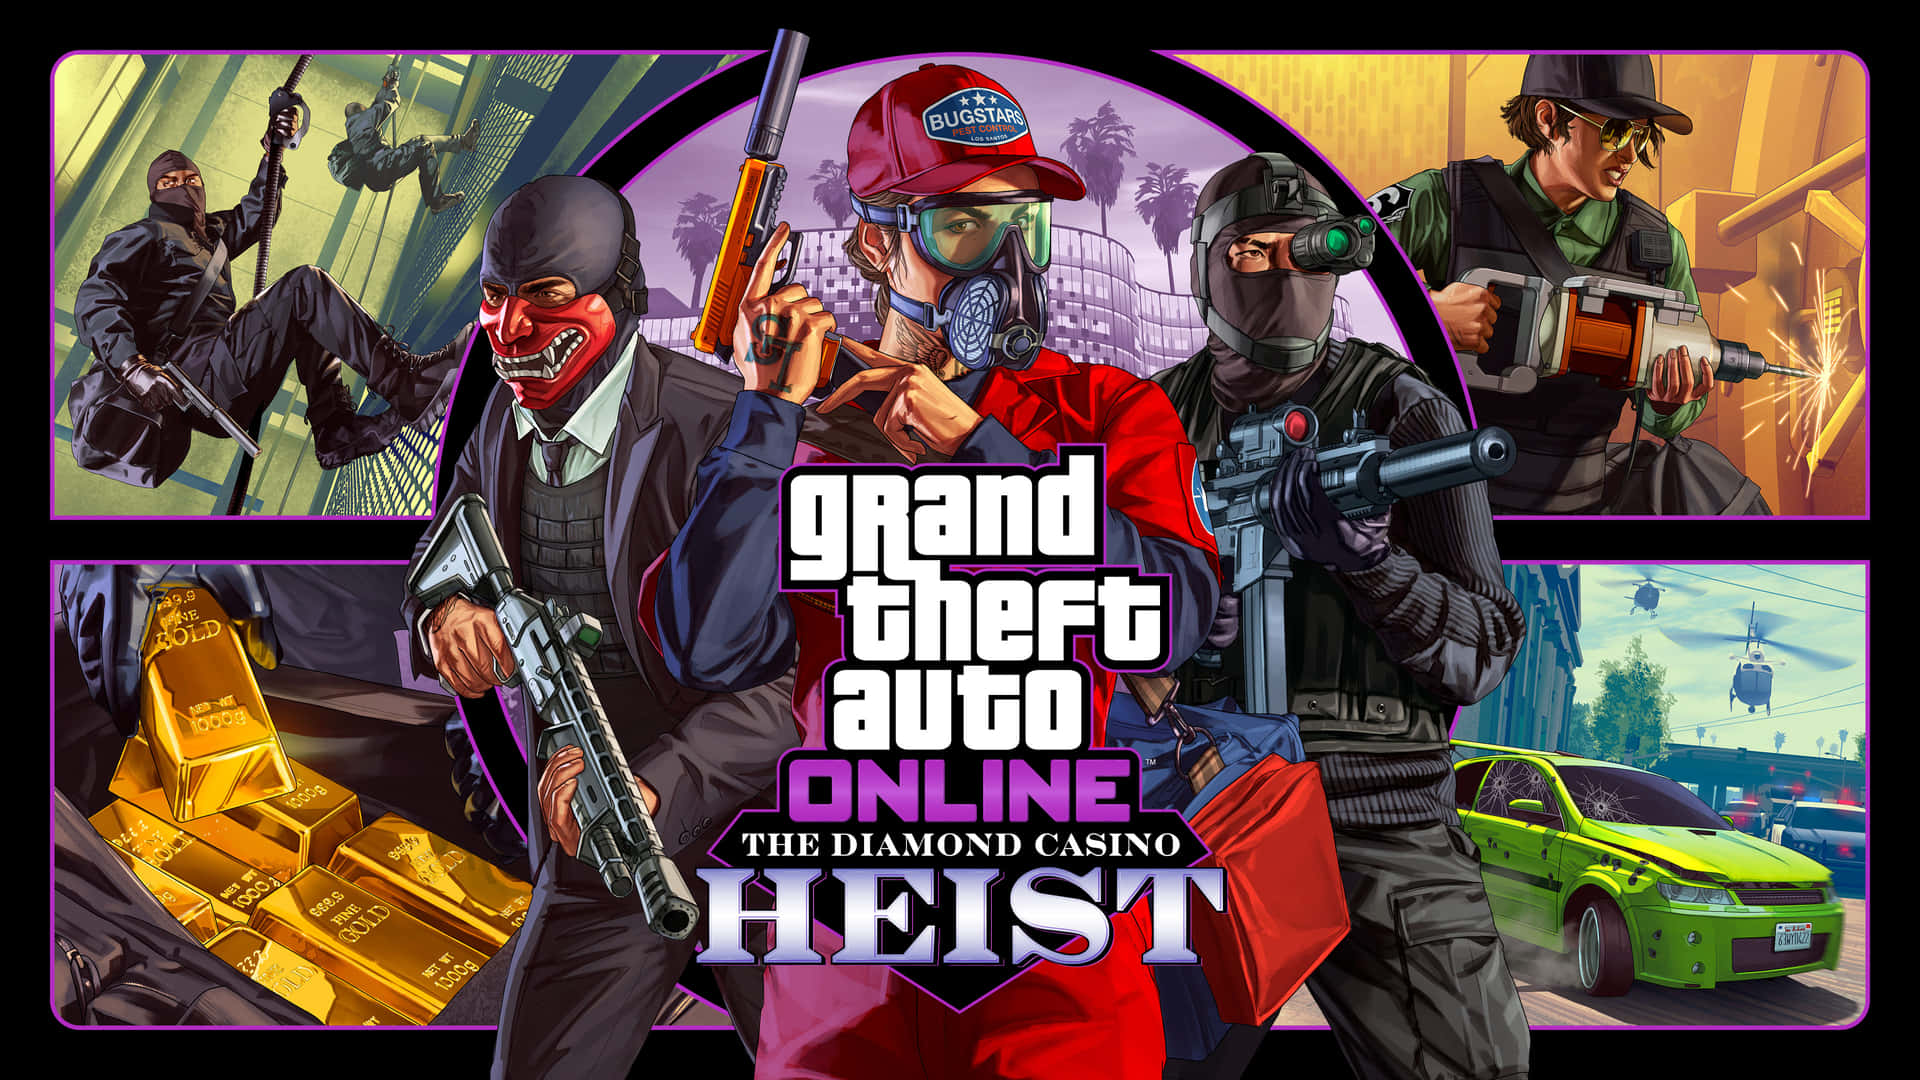 Nyd de Gader i Los Santos i Grand Theft Auto Online med dette flotte tapet. Wallpaper